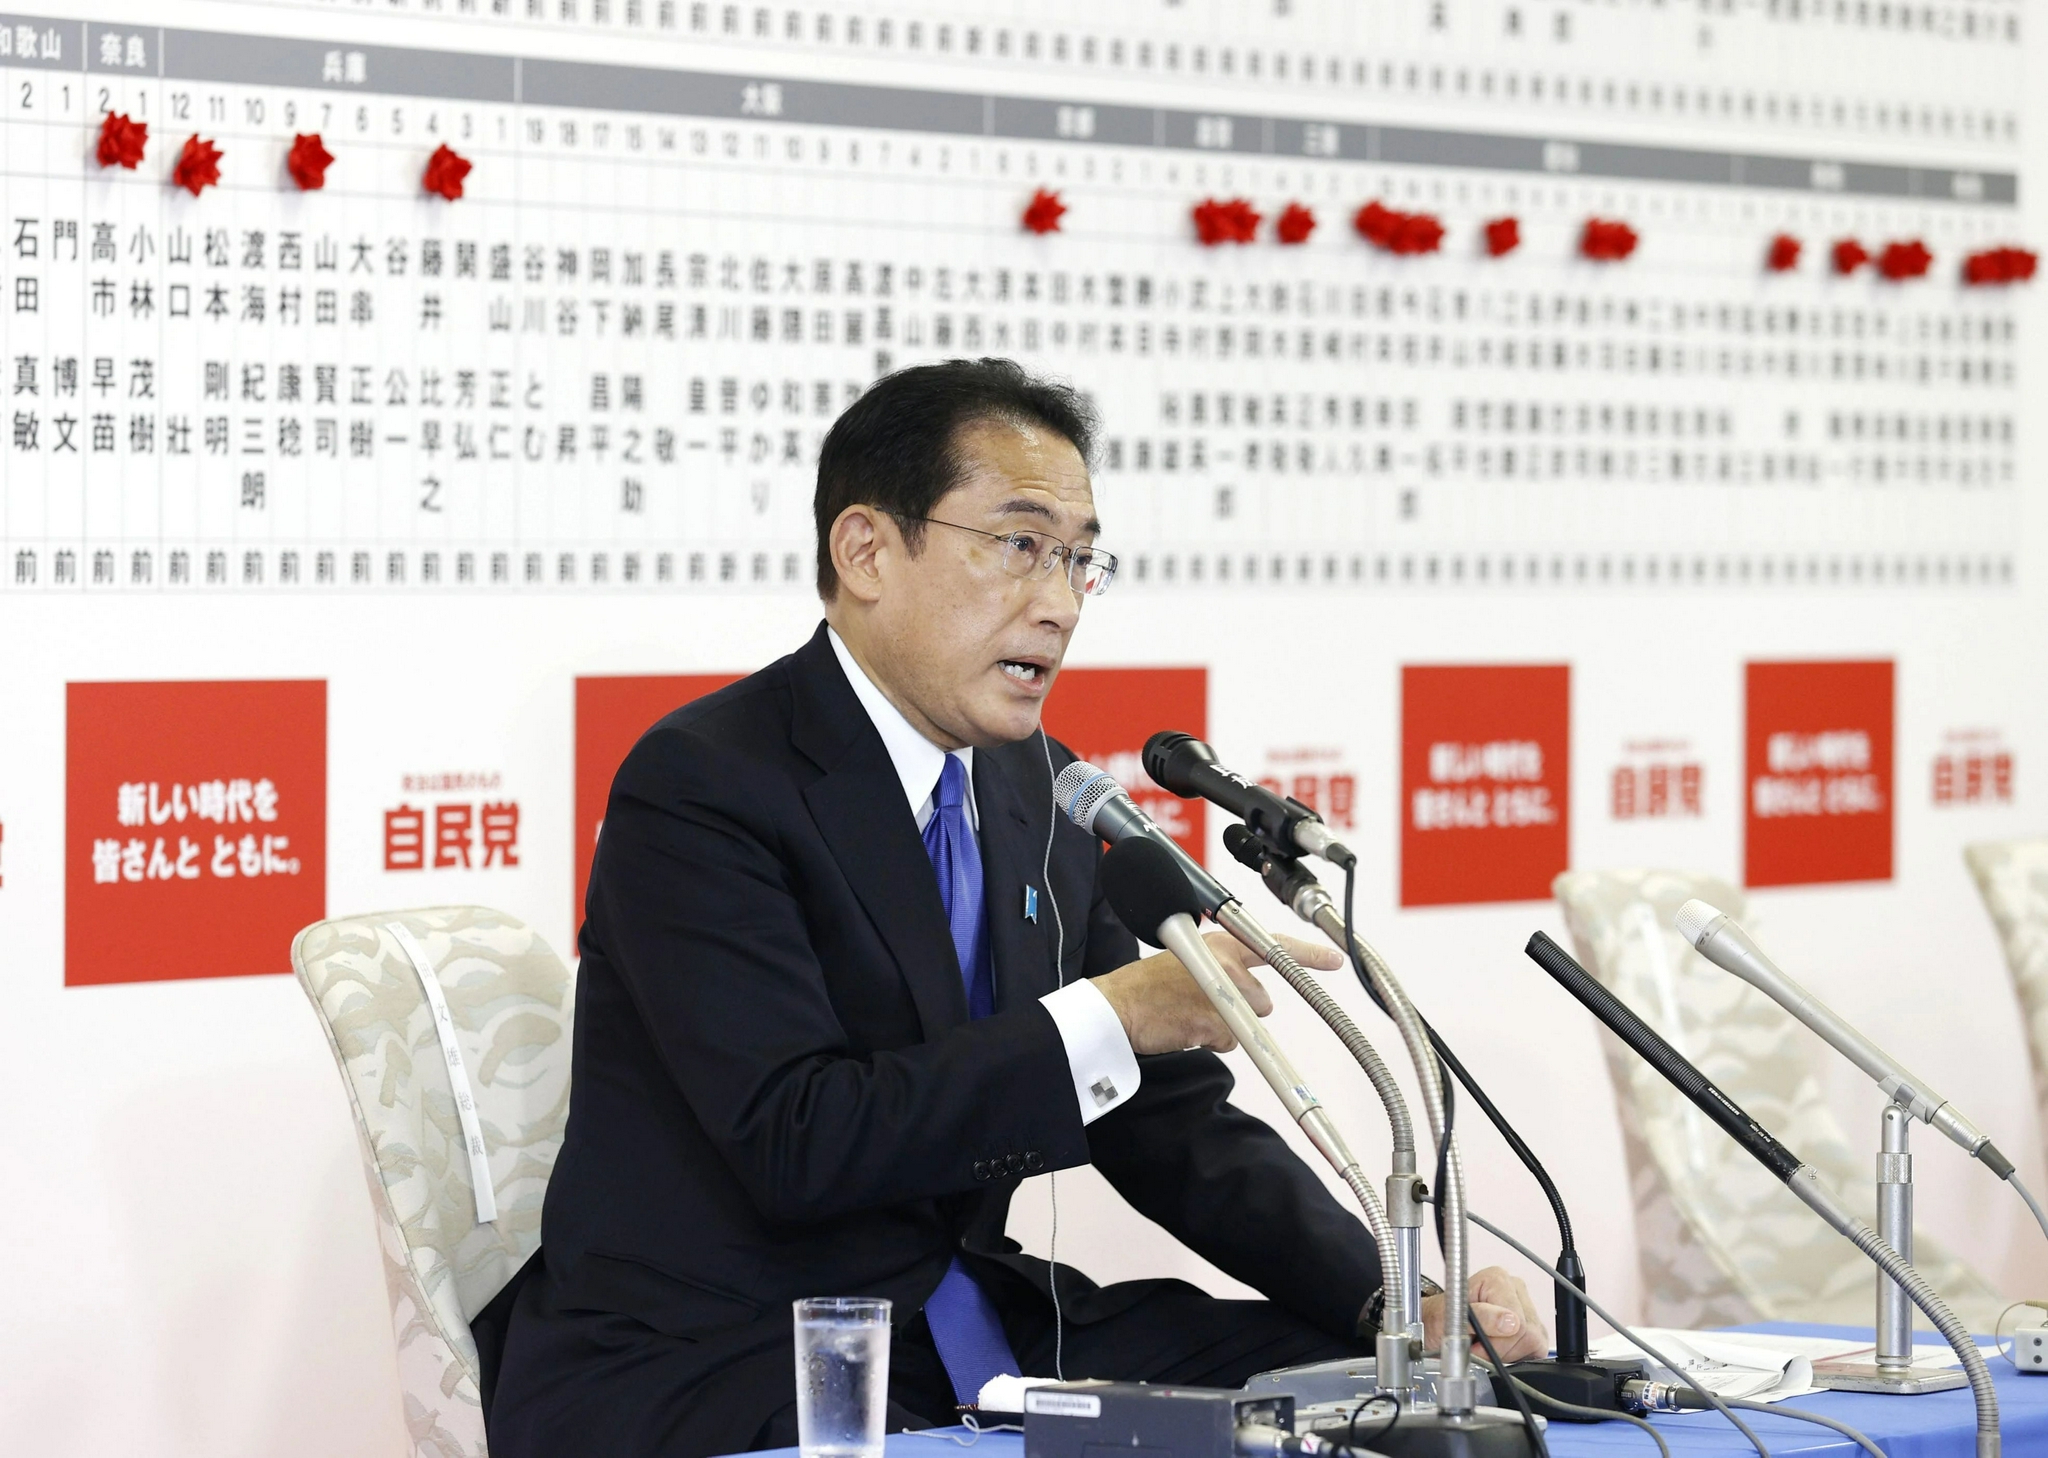 ▲10月31日，日本首相 、自民党总裁岸田文雄在位于东京的自民党总部接受采访	。图/新华社